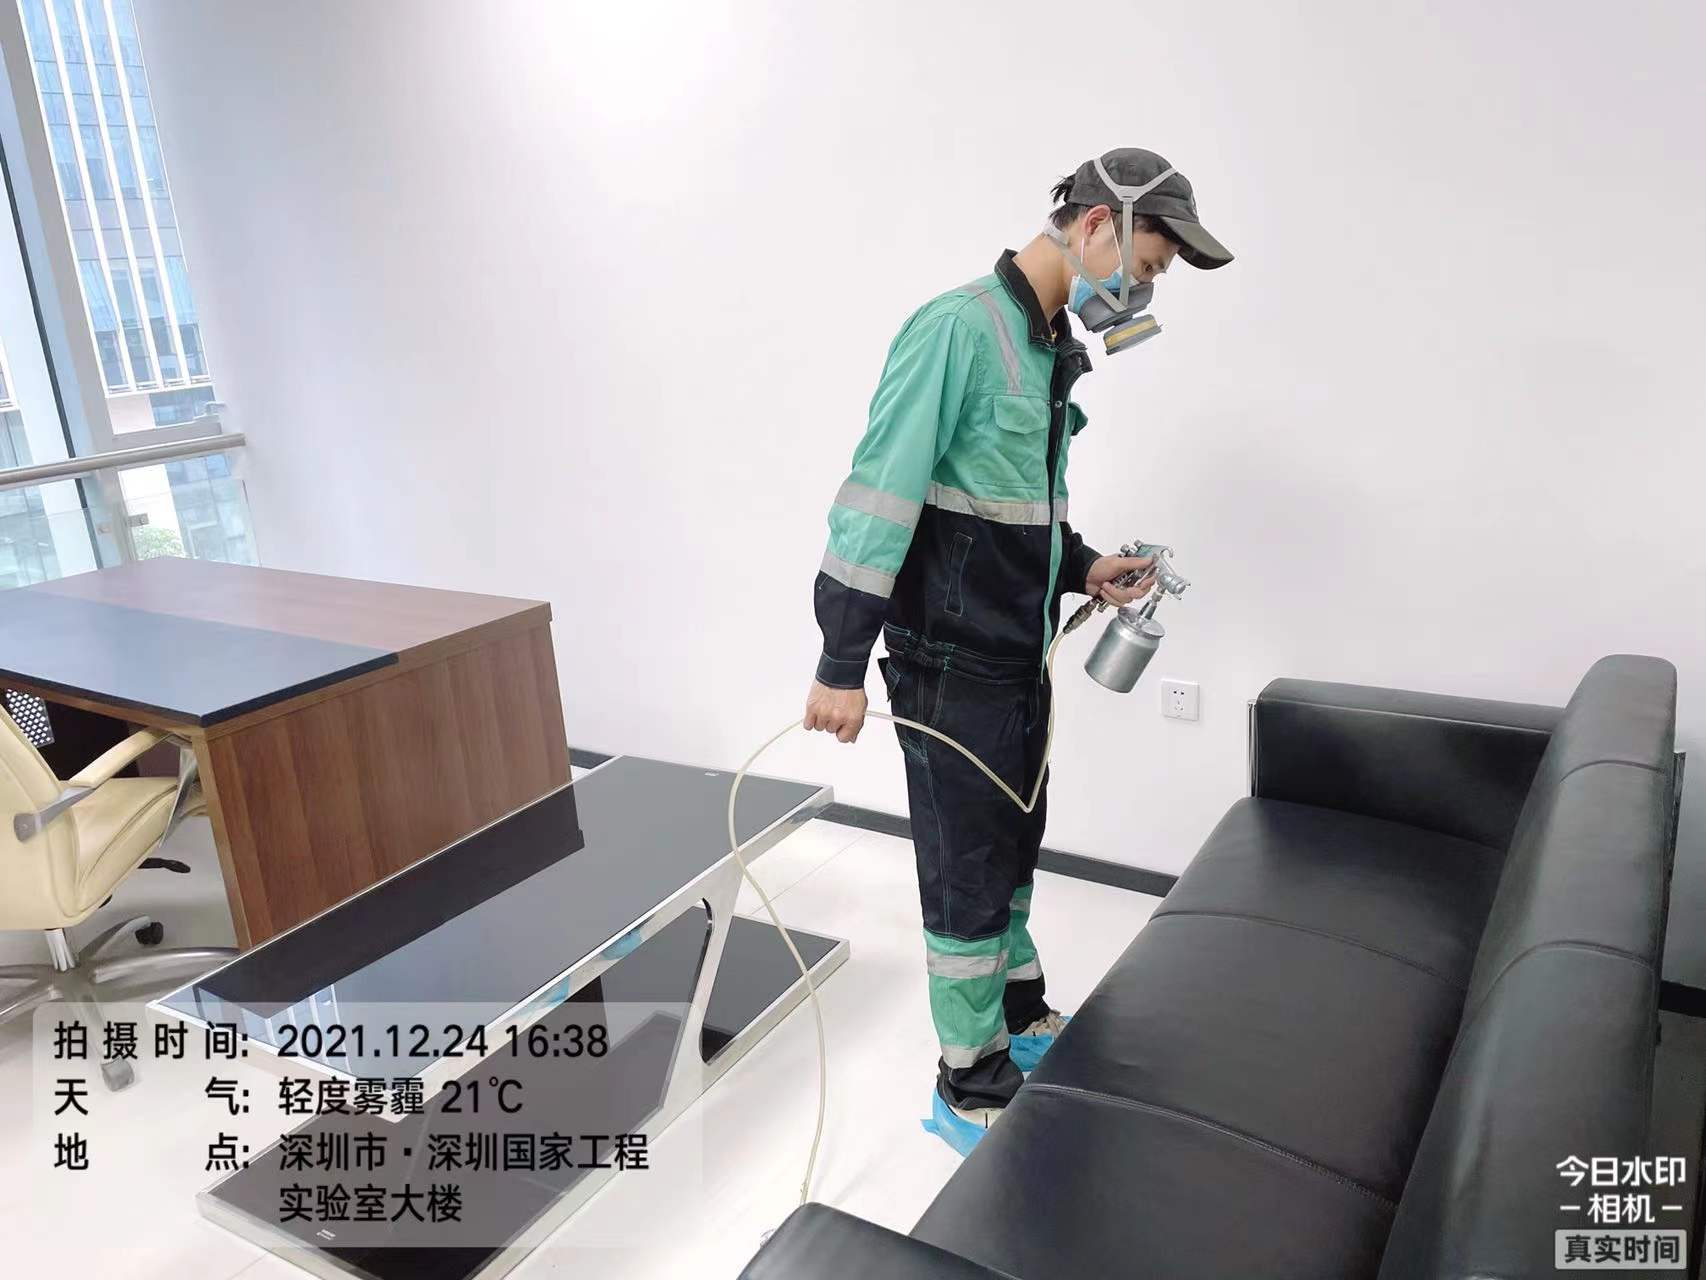 深圳南山区迈步机器人有限公司施工现场有码-98eb1cd7d02362fd522bead2216a280